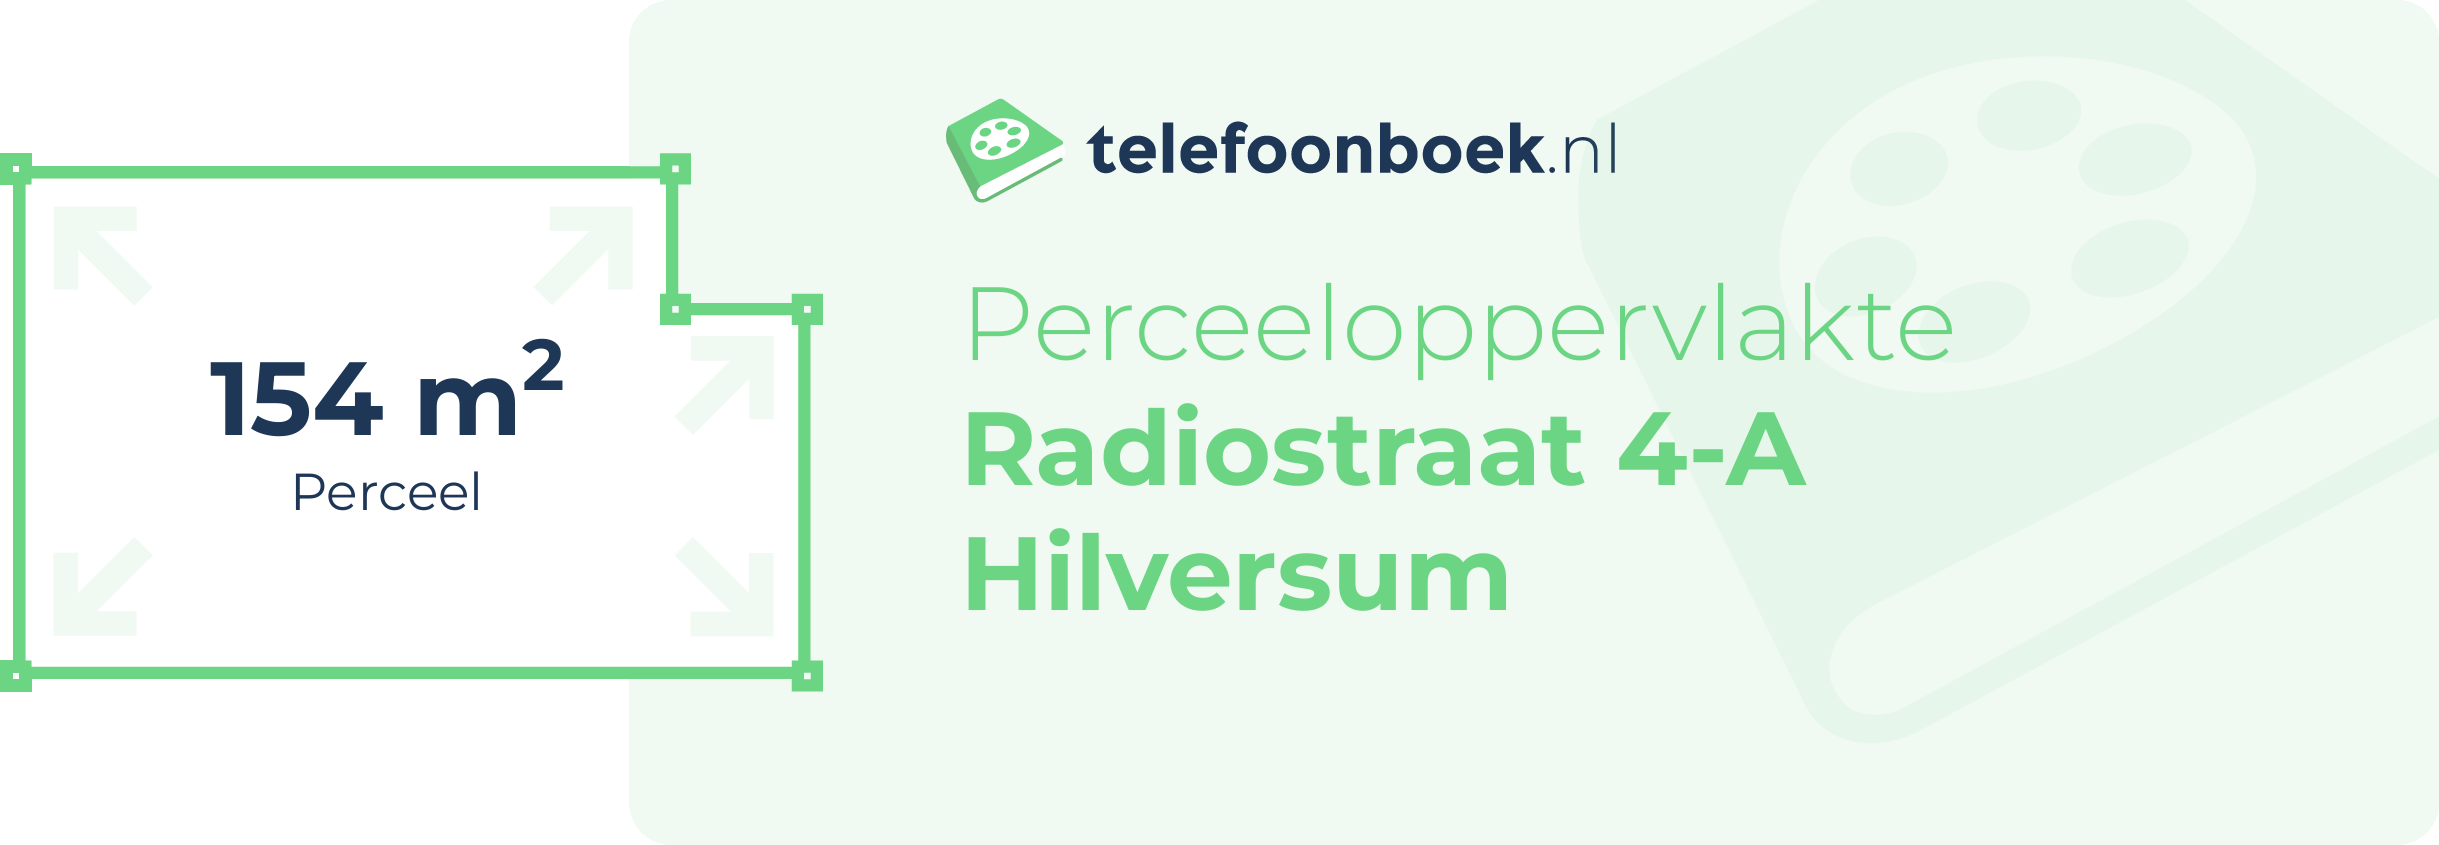 Perceeloppervlakte Radiostraat 4-A Hilversum